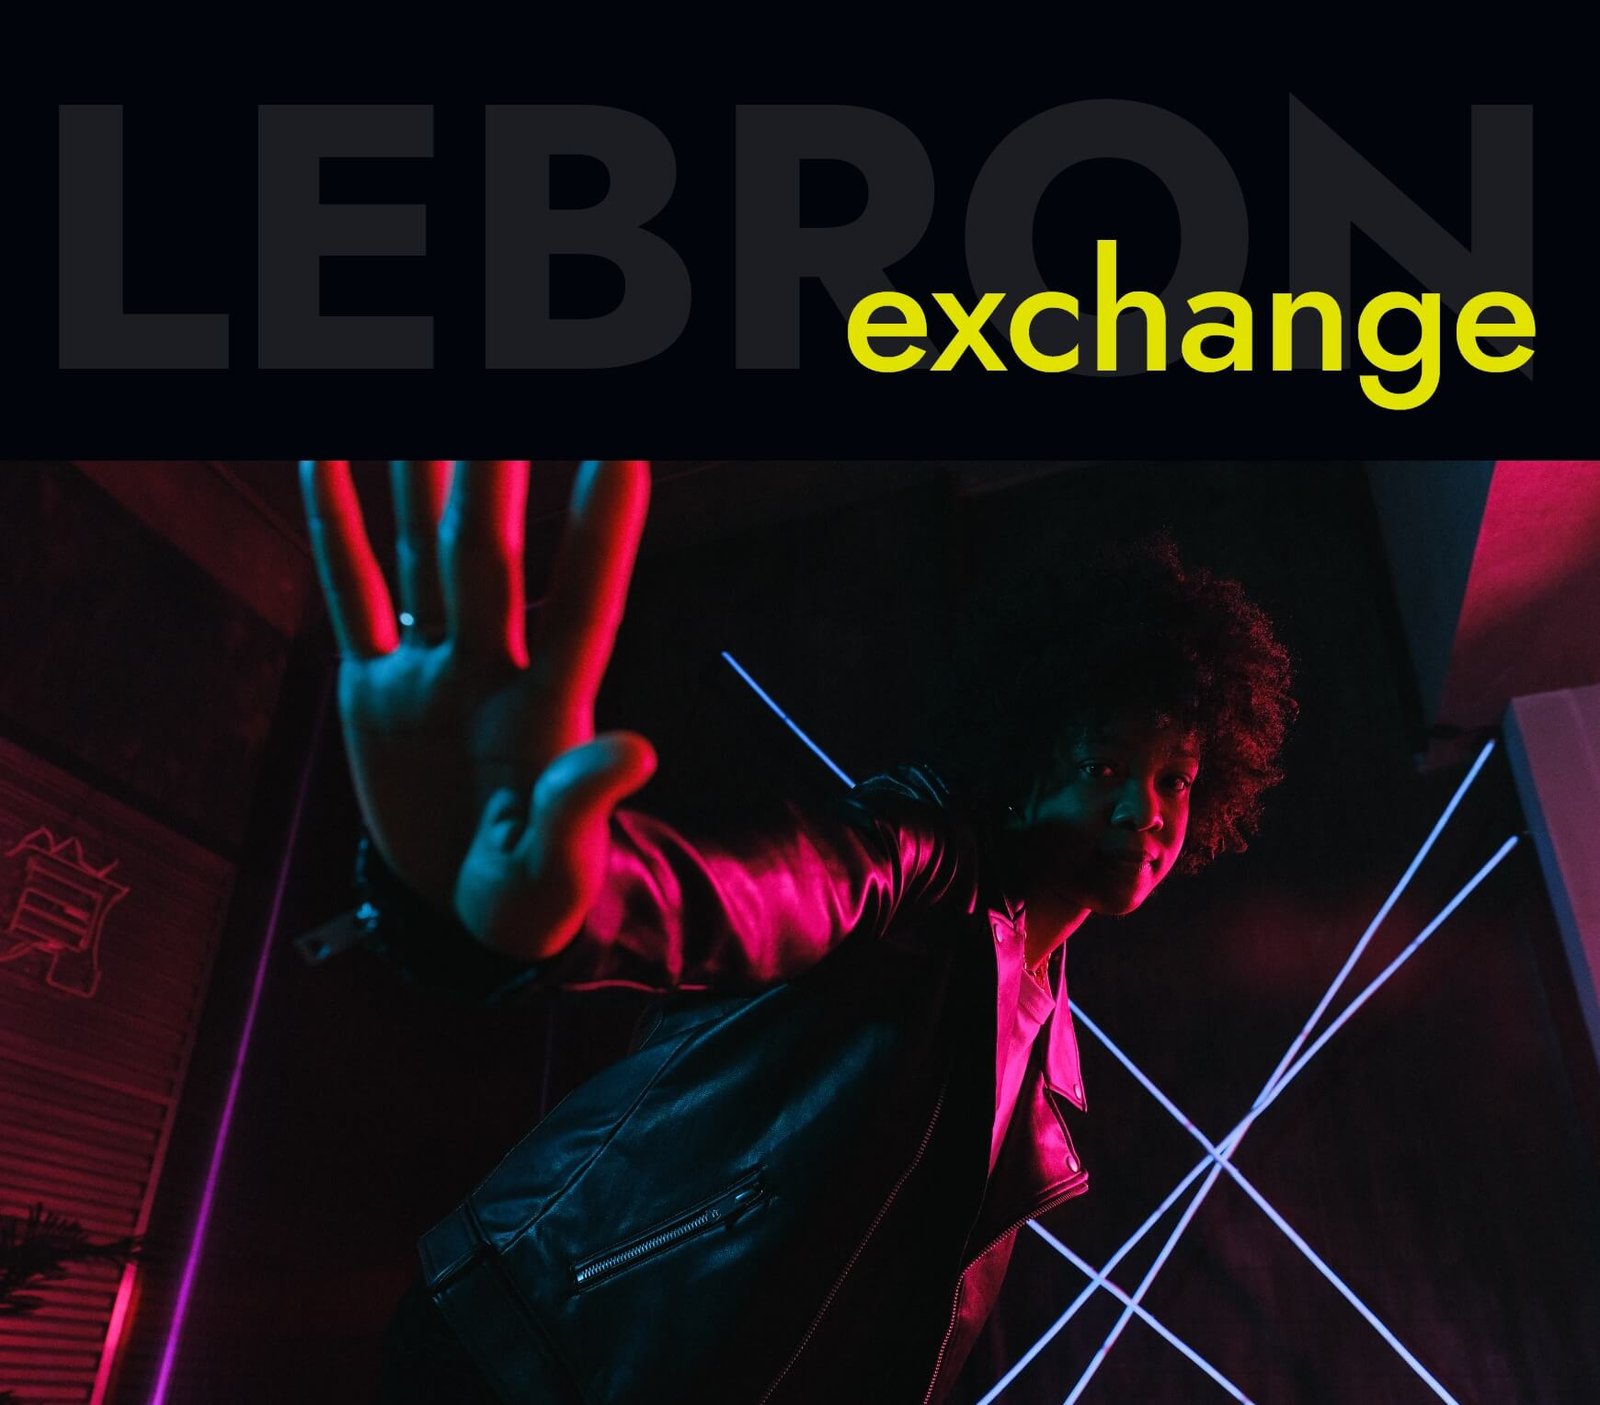 Lebron: Exchage